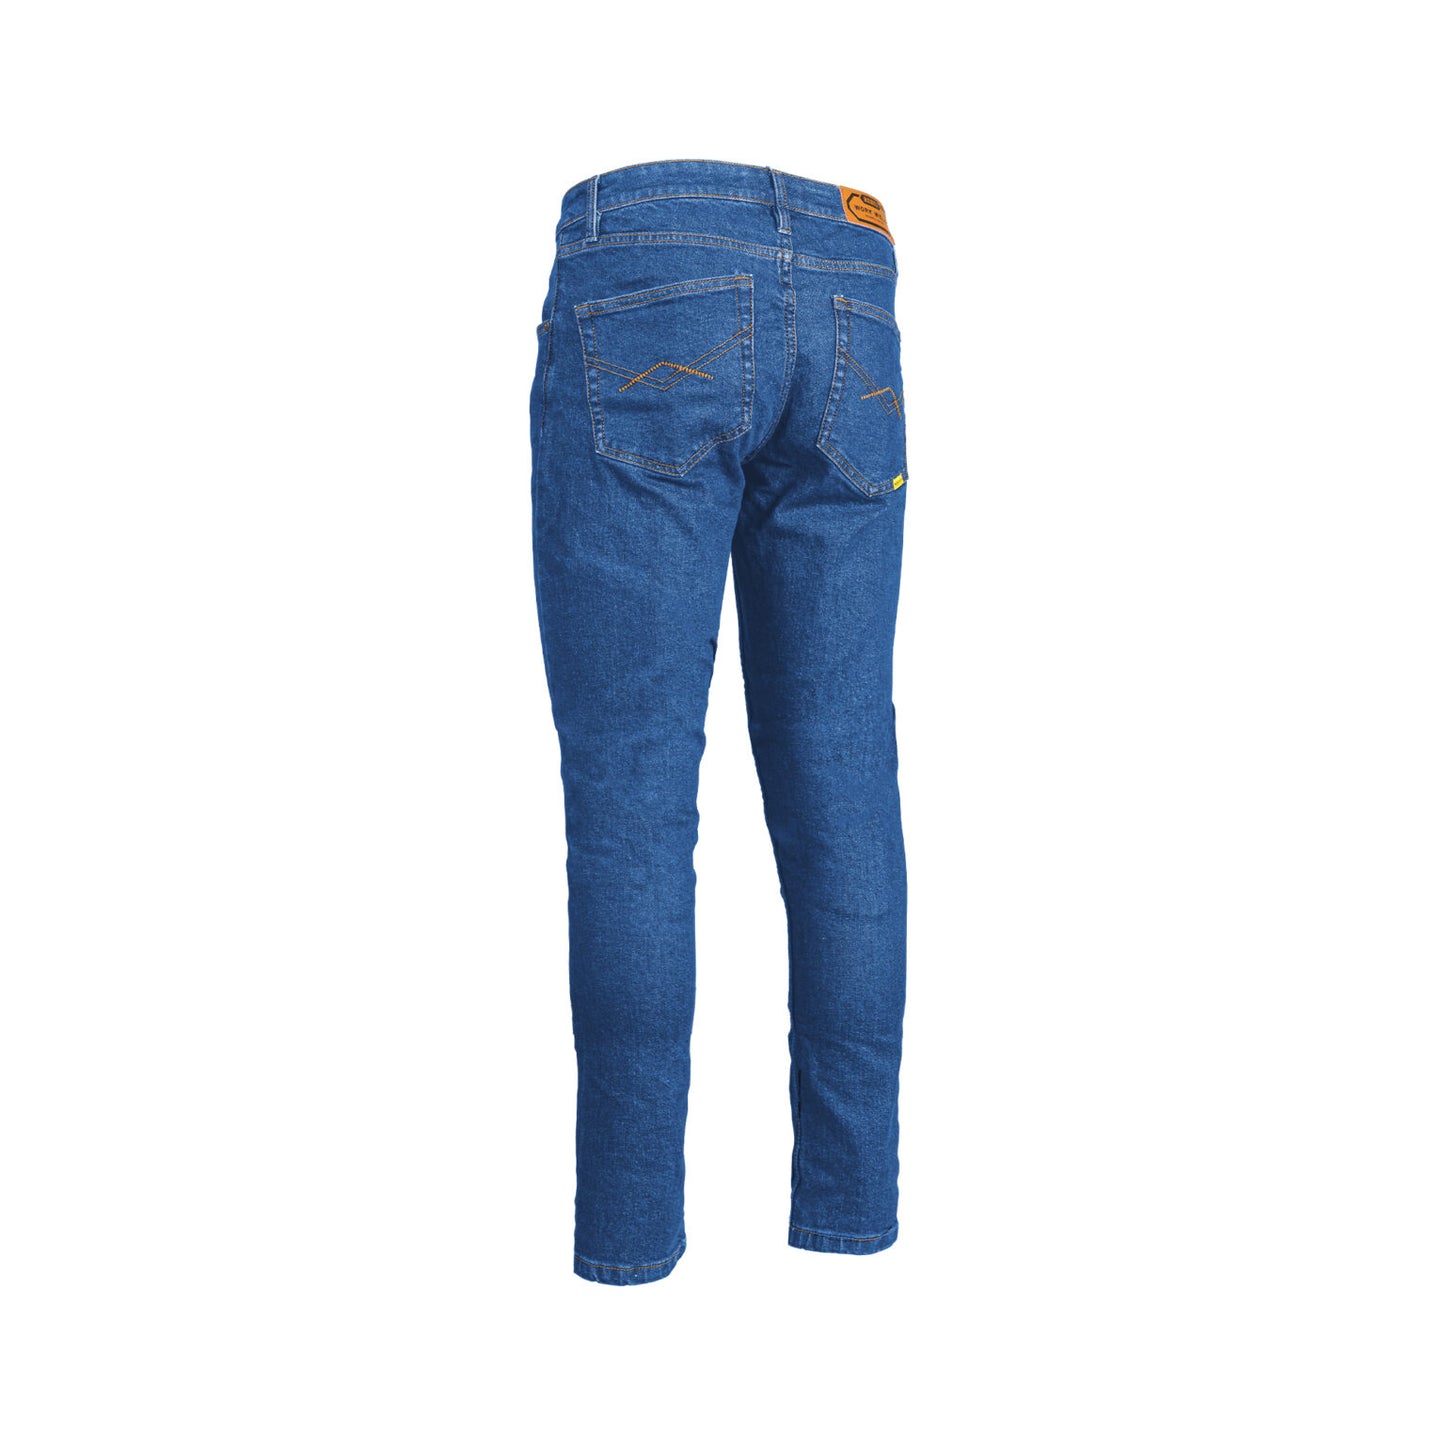 REBEL Men’s Workwear Jeans